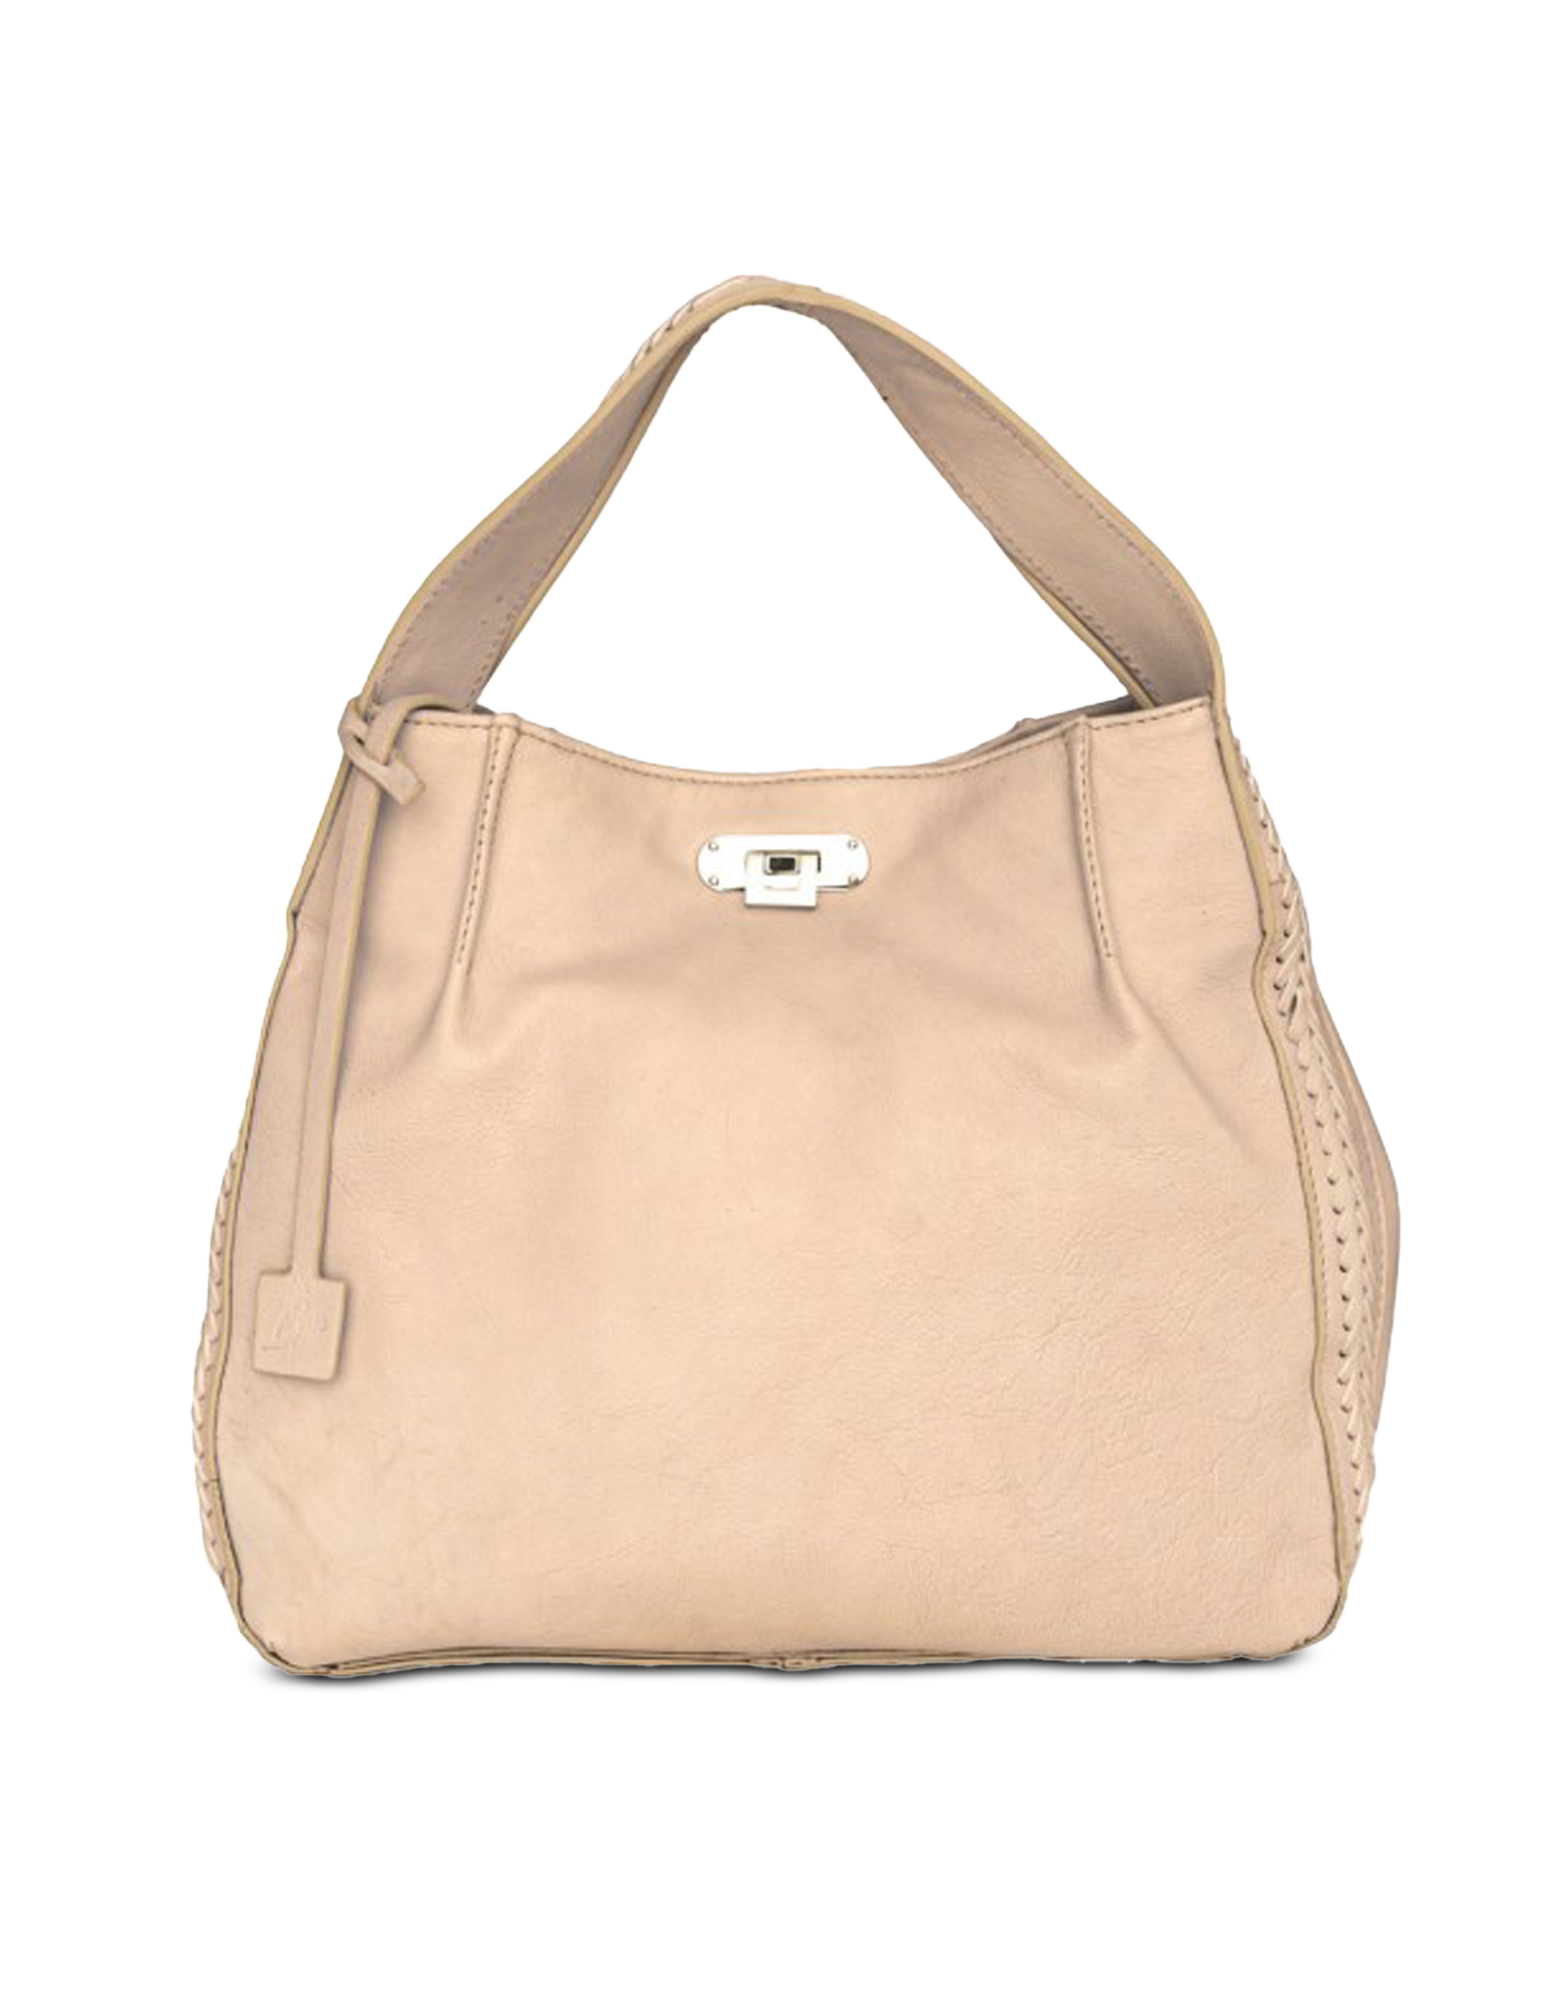 Buti Lara New Beige Leather Large Shoulder Bag